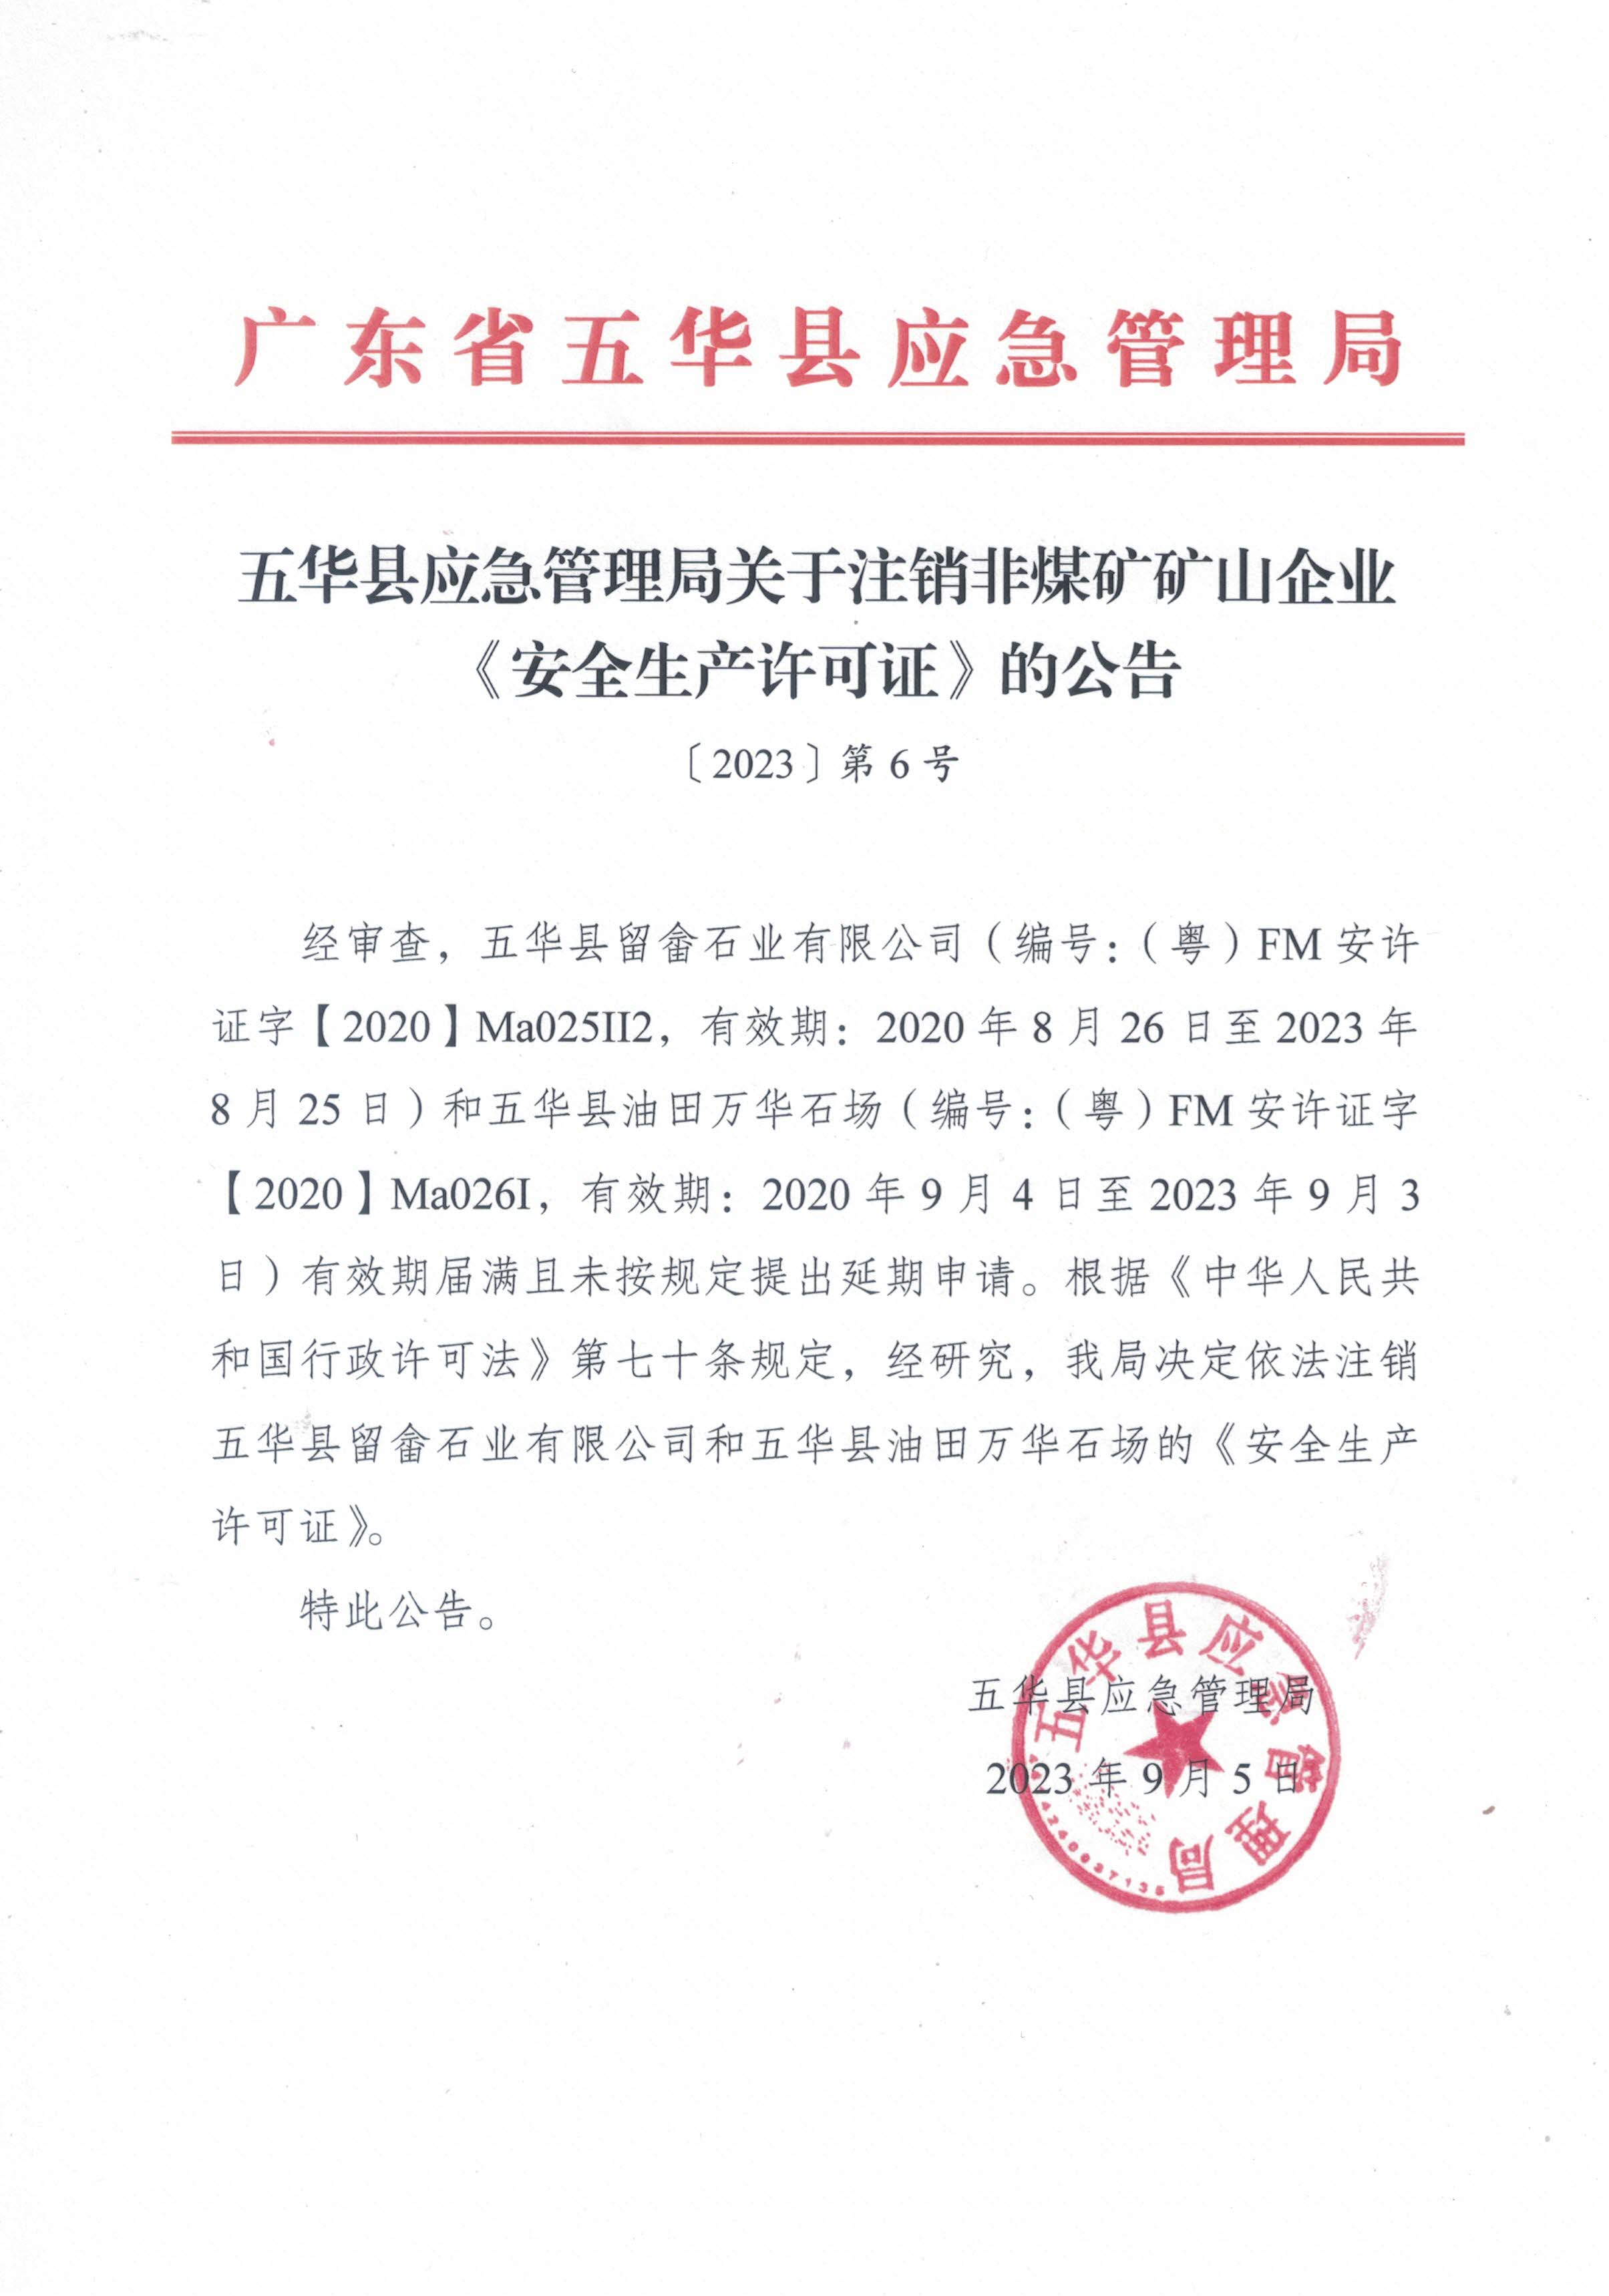 （2023年第6号）五华县应急管理局关于依法注销非煤矿矿山企业《安全生产许可证》的公告.jpg